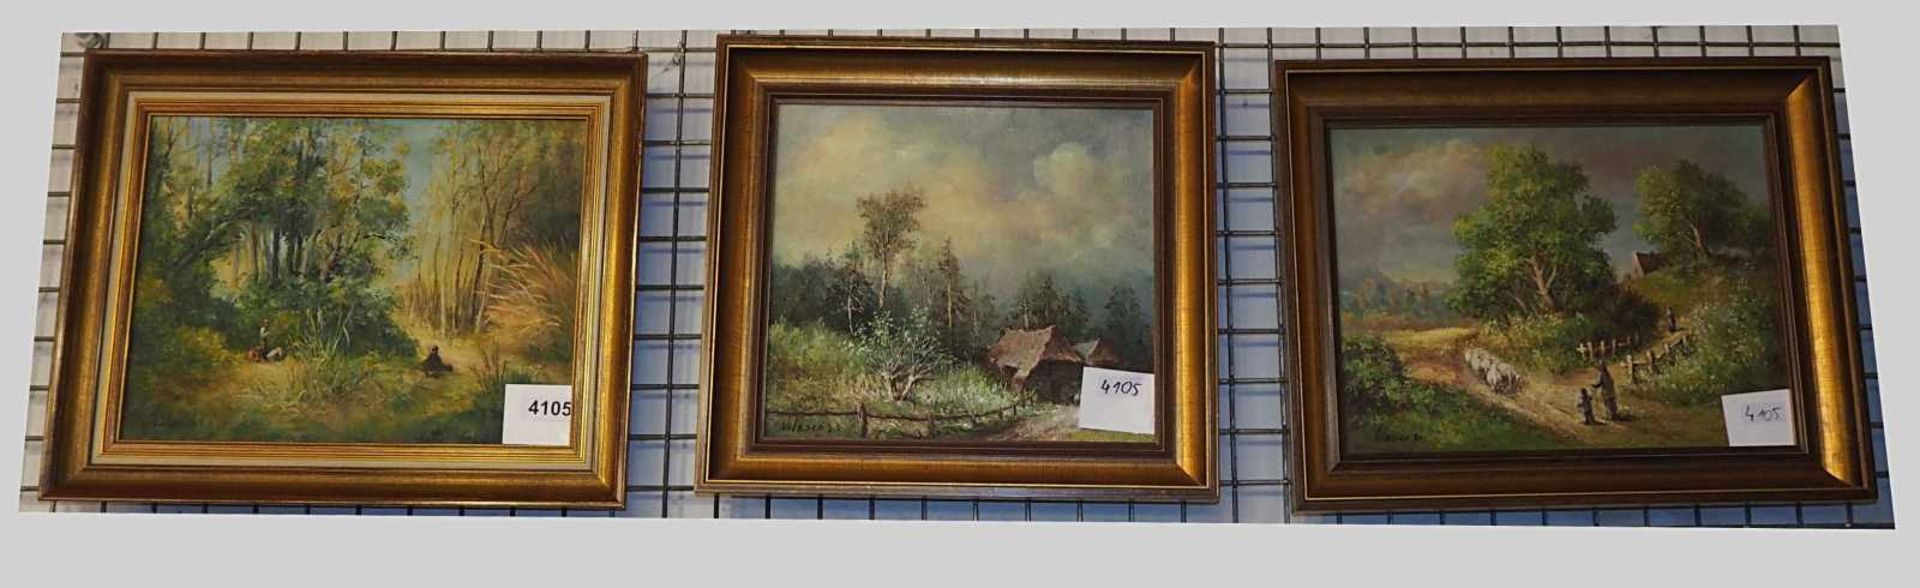 3 Ölgemälde "Landschaftsdarstellungen" je L.u. sign. VILASCO1970er/80er Jahre Öl/Holz/Lwd. versch.